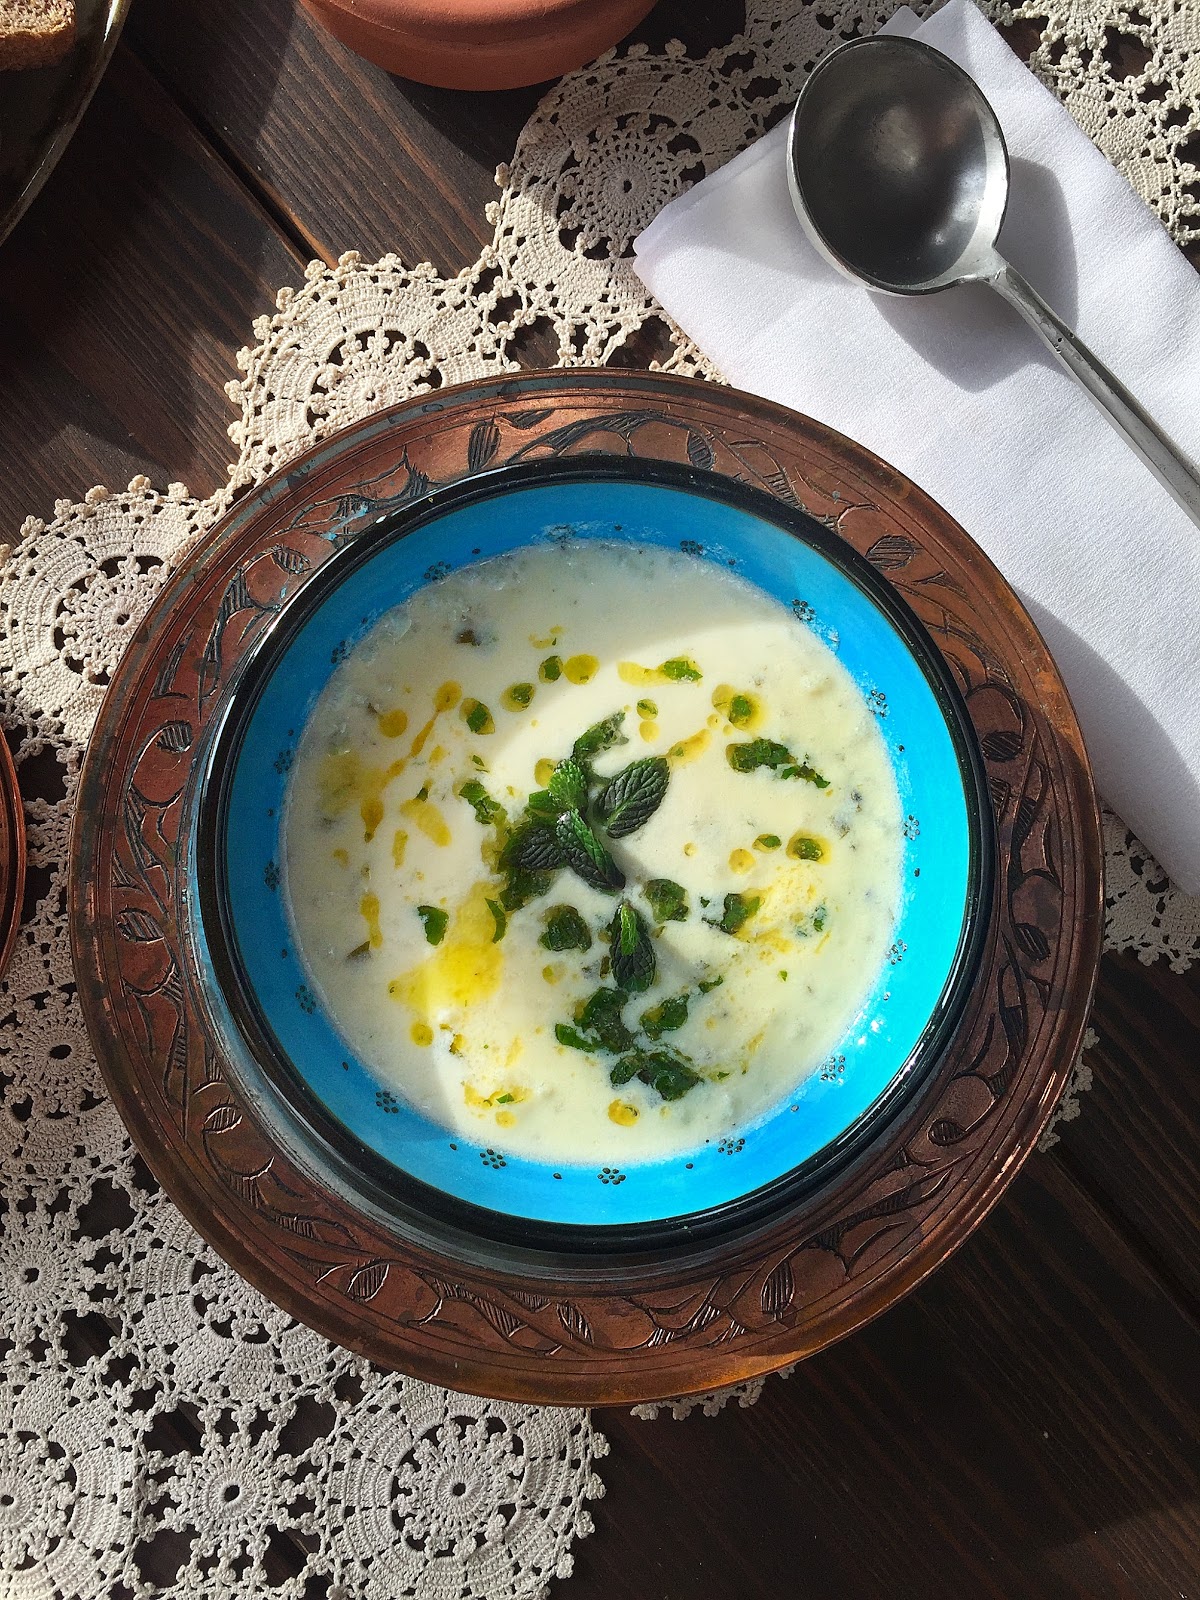 PIPER NIGRUM: Turkish Yogurt Soup